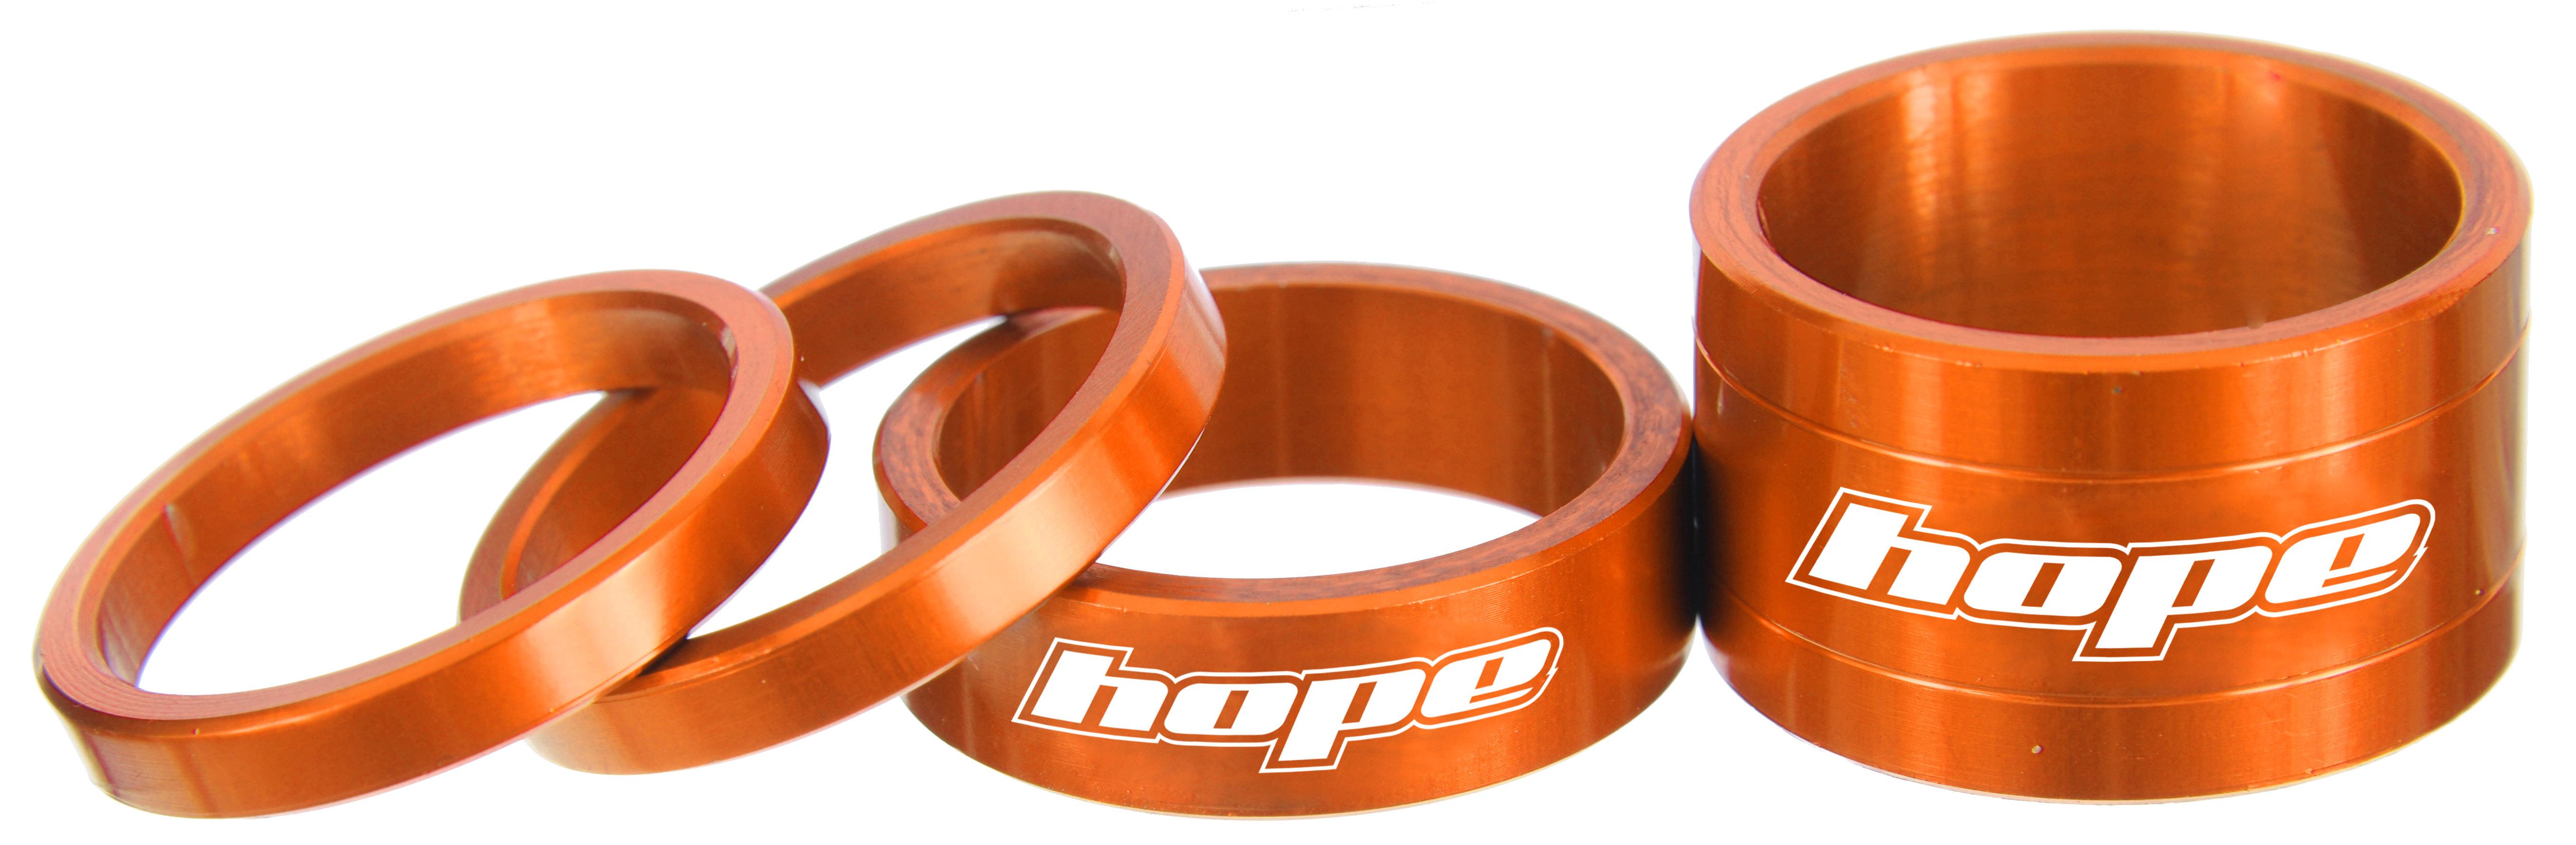 Hope Space Doctor Headset Spacers - Orange